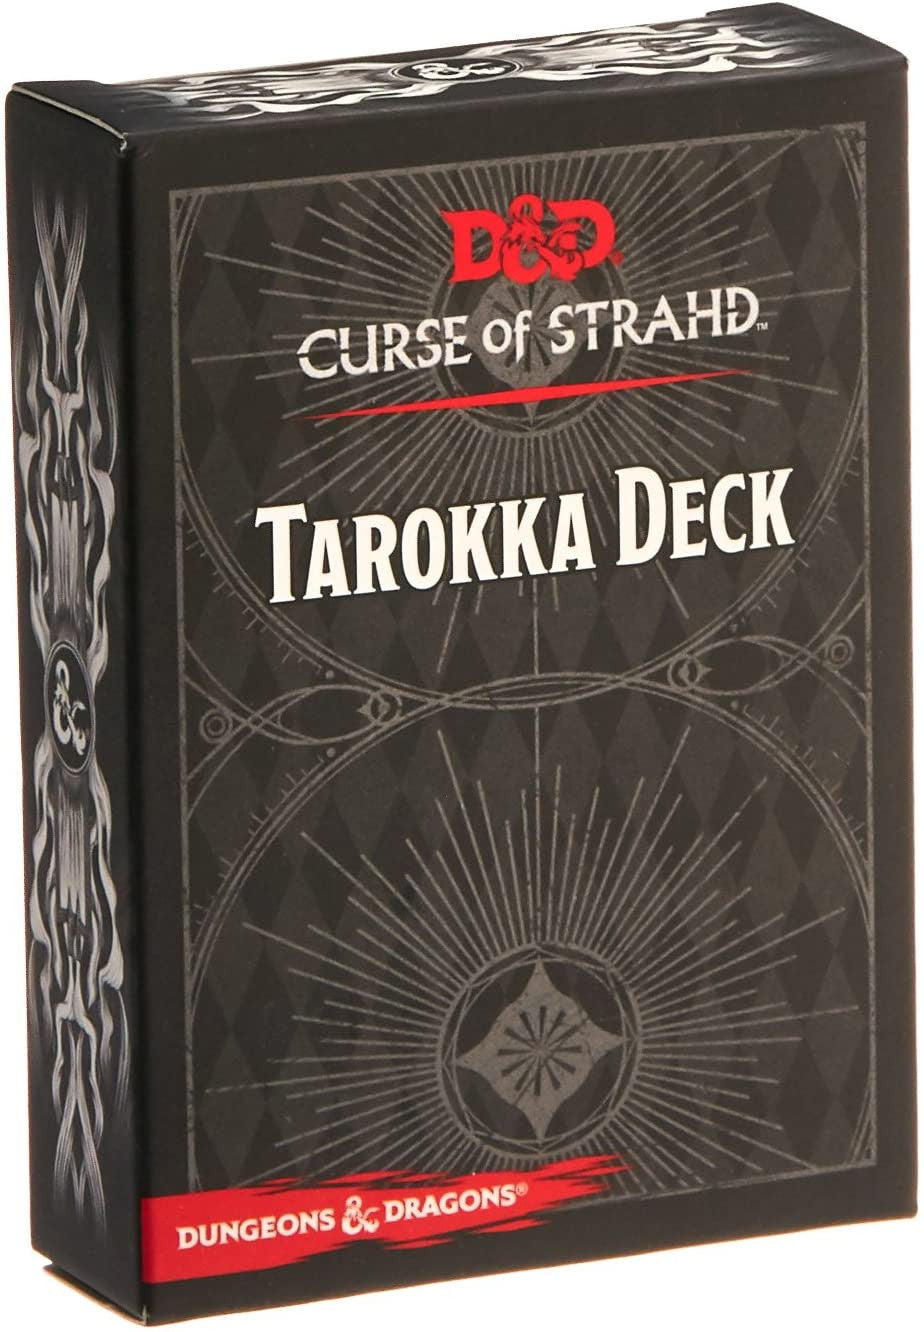 D&D Dungeons & Dragons Curse of Strahd Tarokka Deck